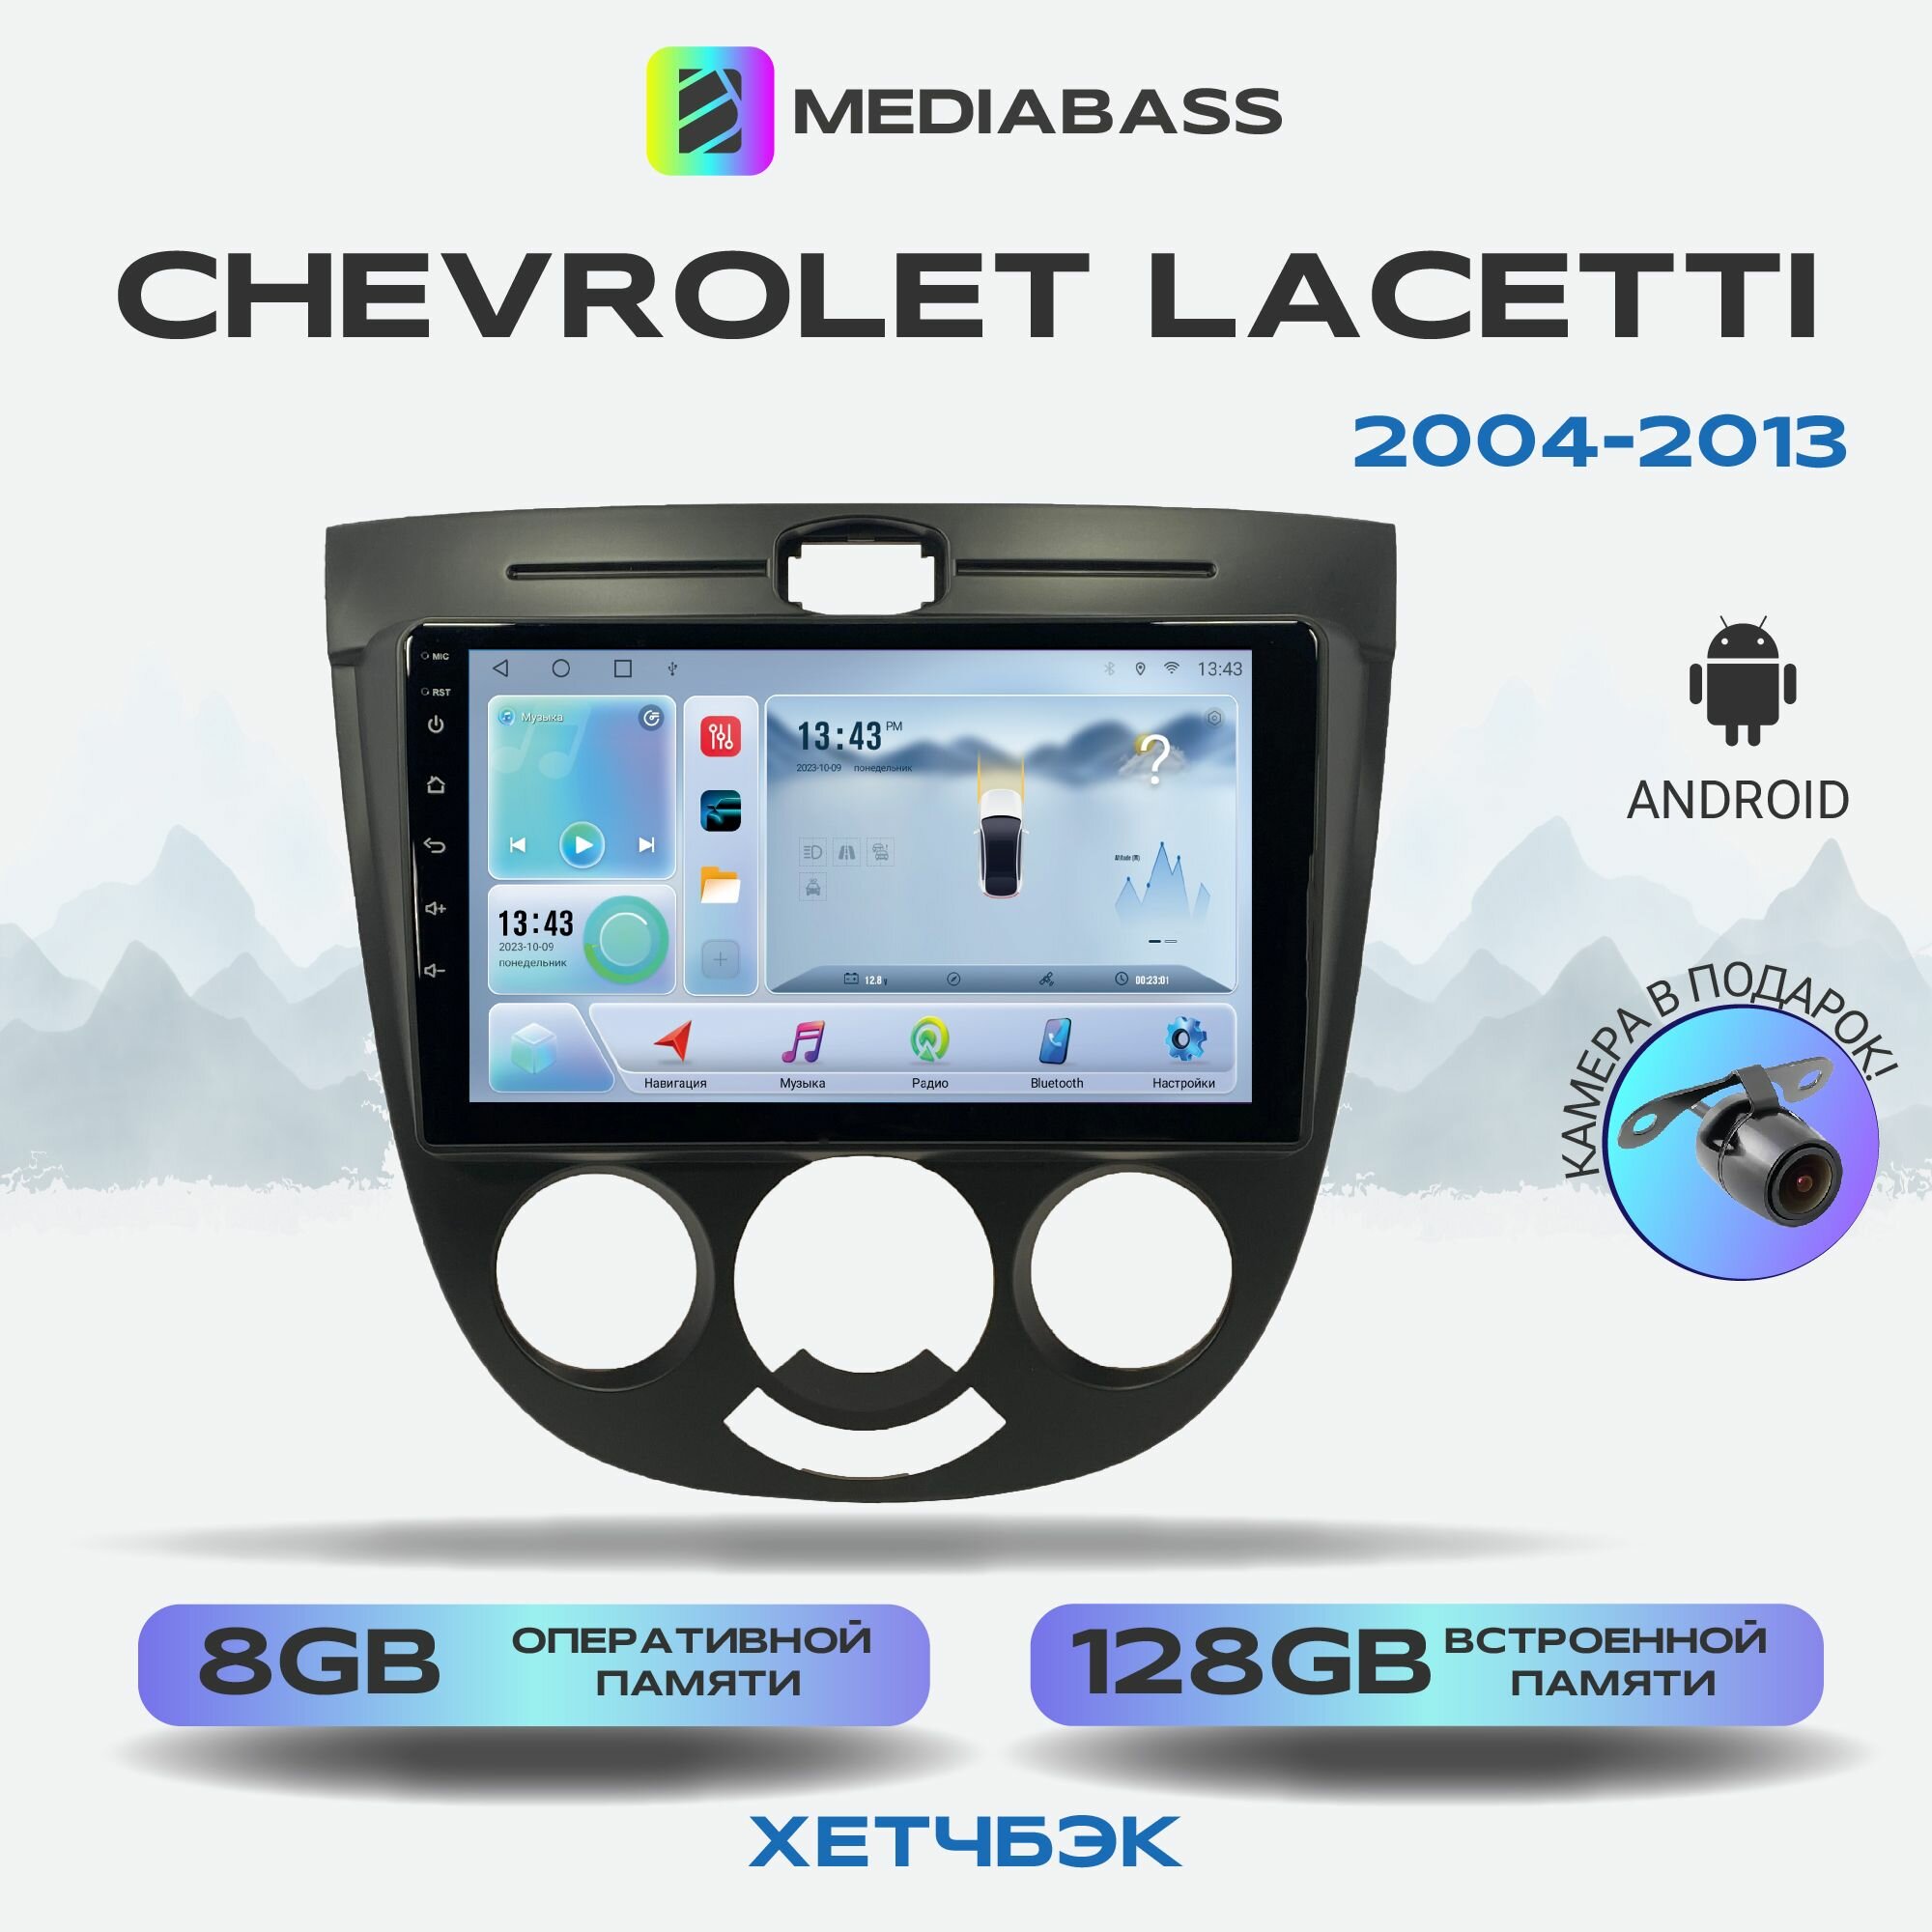 Автомагнитола Mediabass Chevrolet Lacetti хетчбэк, Android 12, 8/128ГБ, 8-ядерный процессор, DSP, 4G модем, голосовое управление, чип-усилитель TDA7851, 4G LTE / Шевроле Лачетти хетчбэк